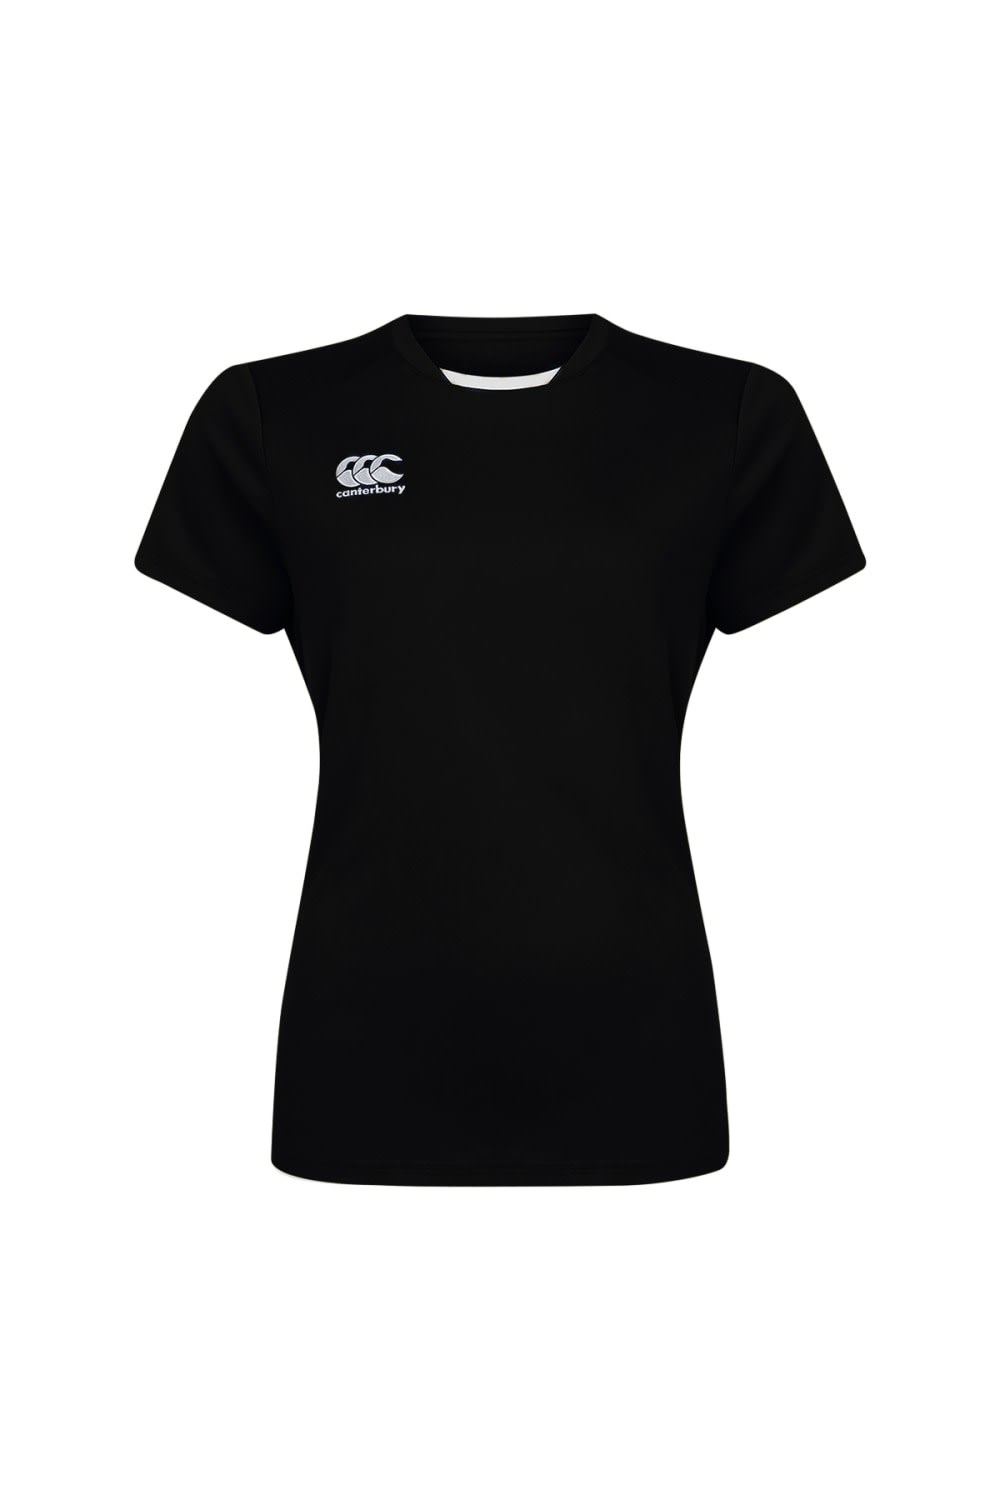 Club Dry Womens T-Shirt